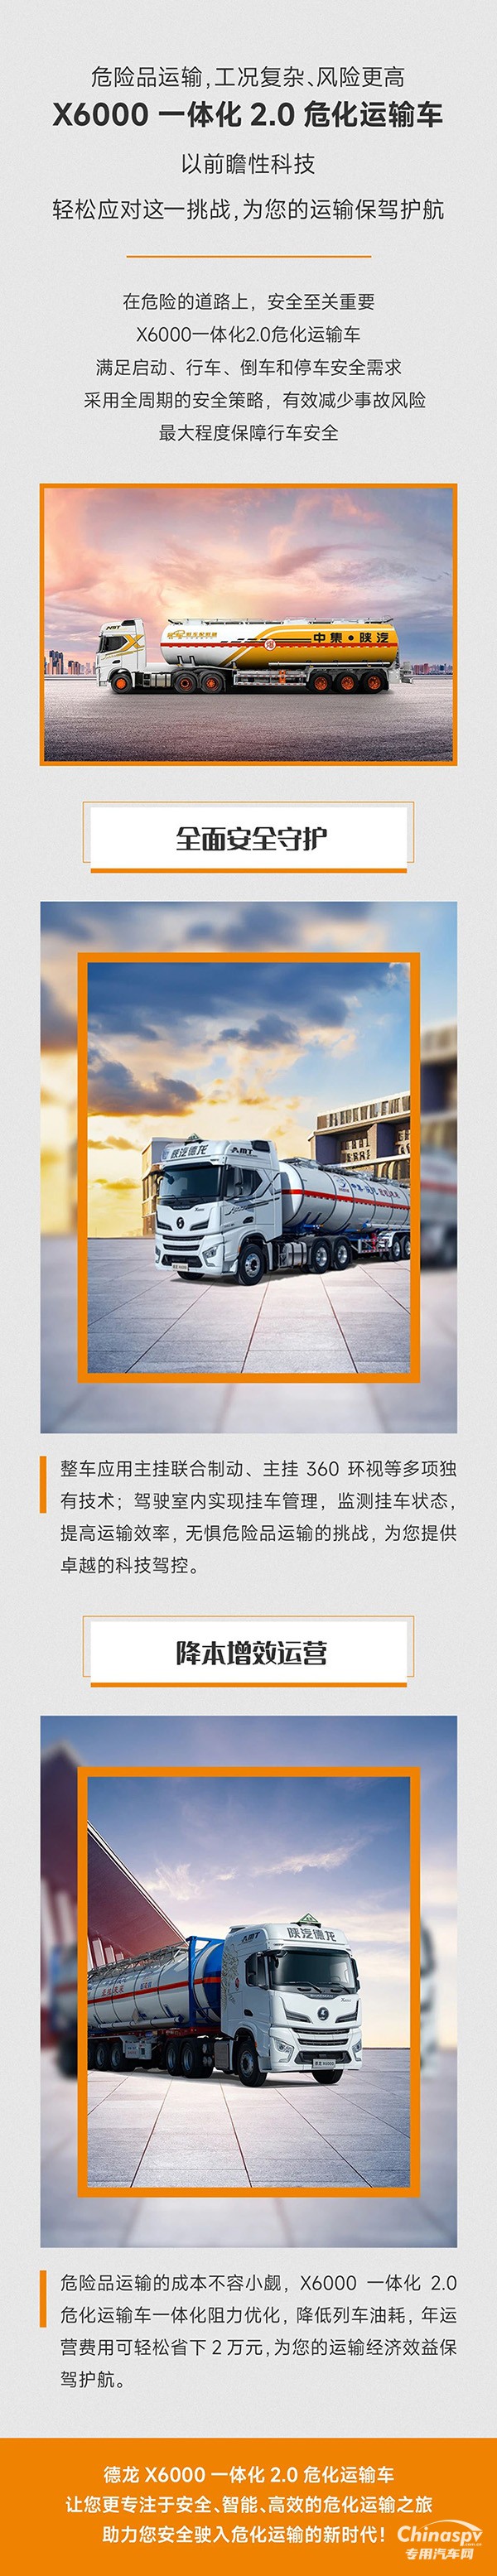 中集陕汽一体化:X6000一体化危化运输车，领航您的价值安全之旅